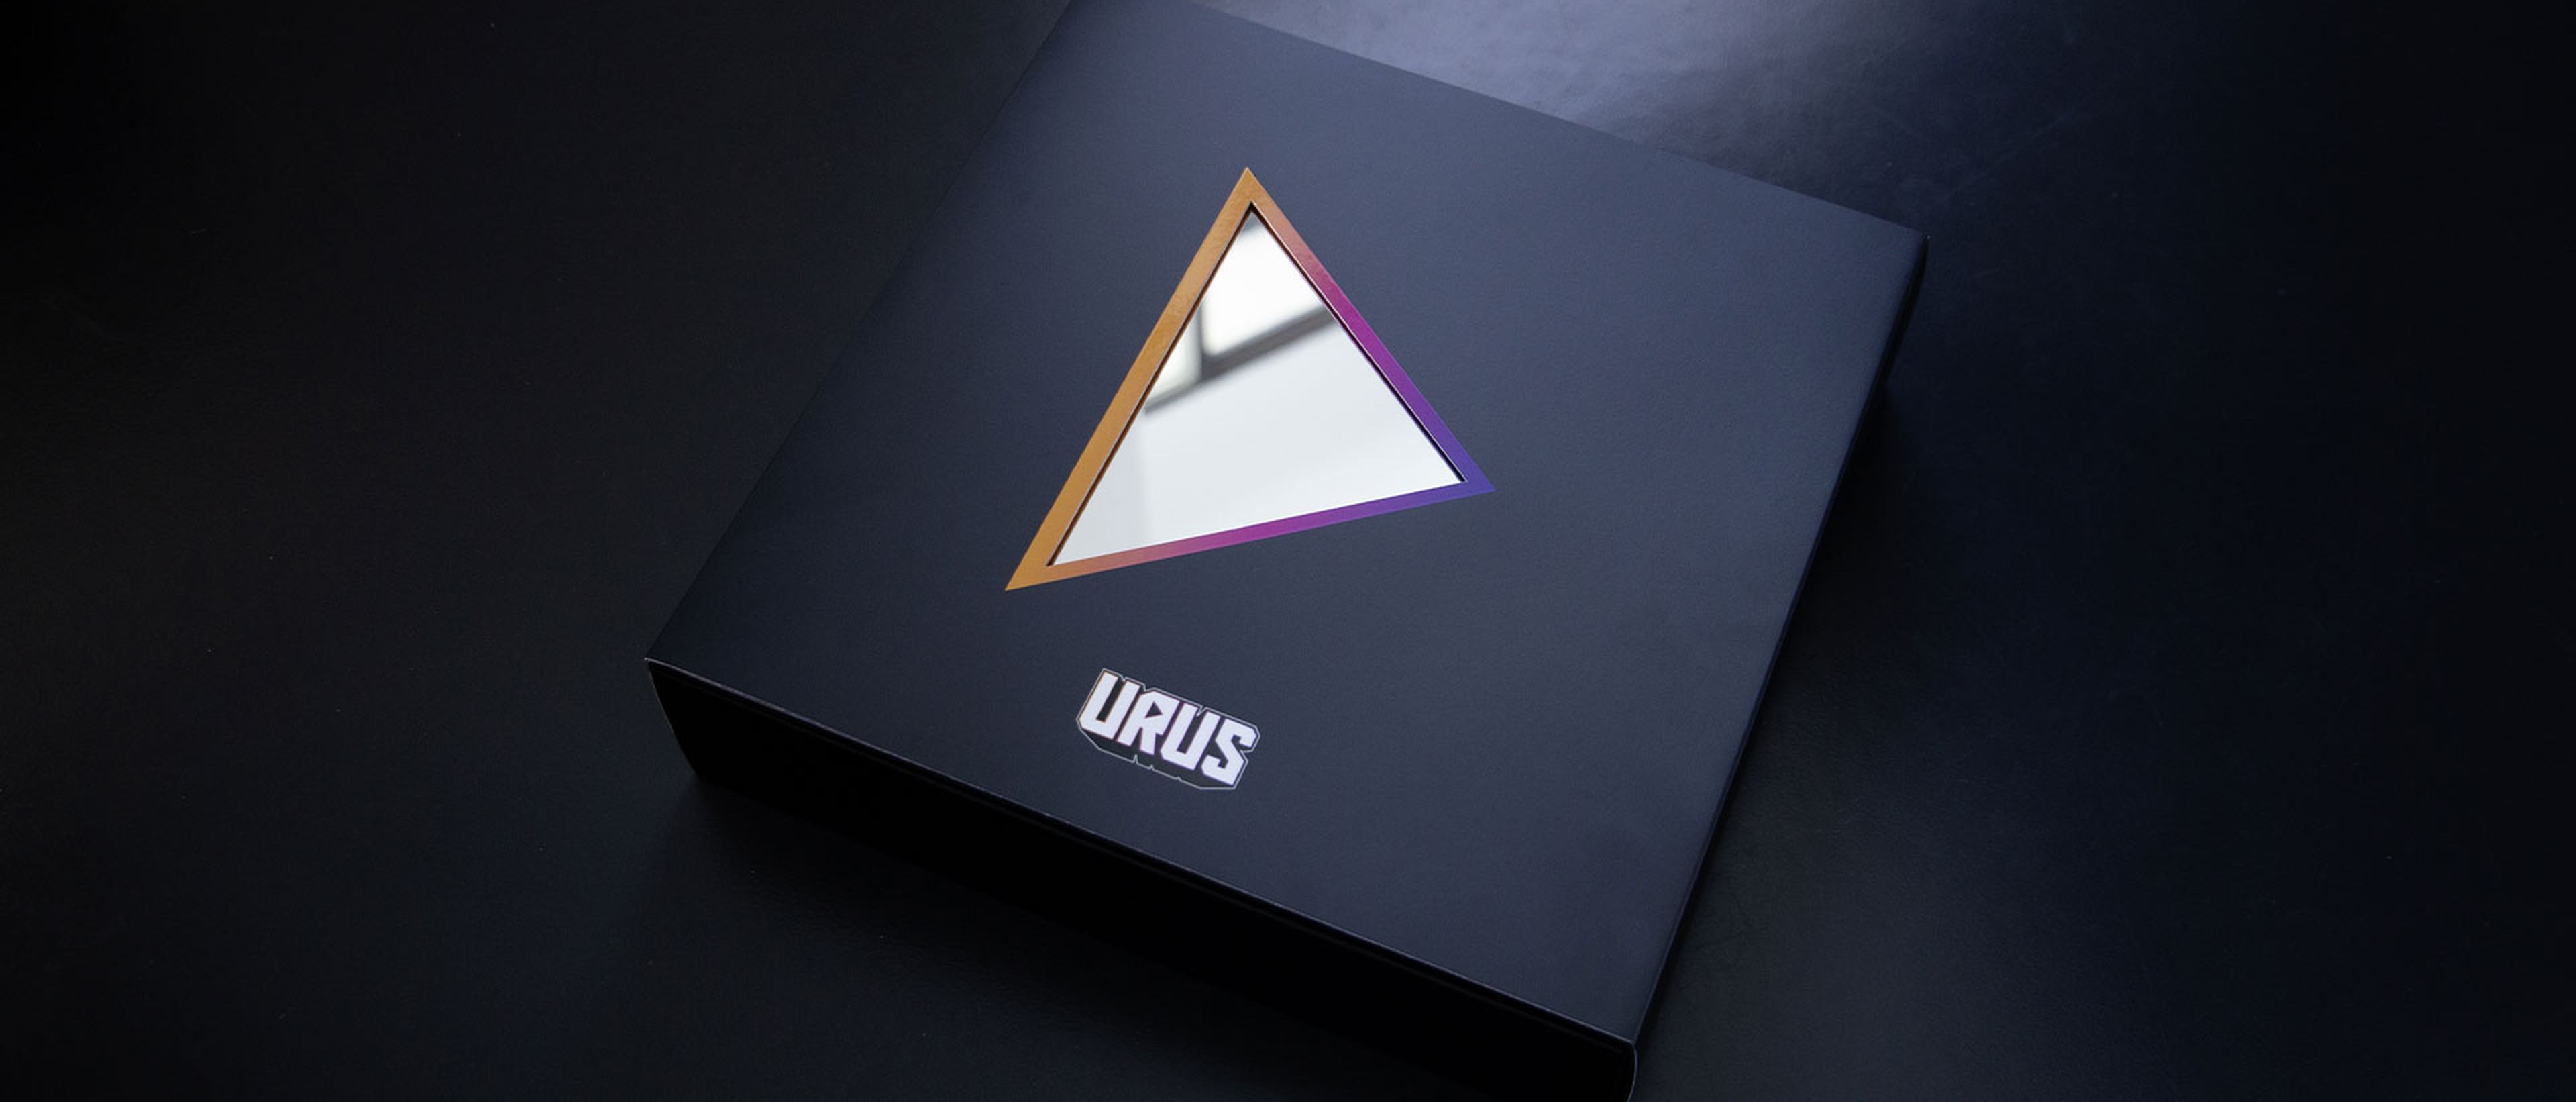 Schwarze Box mit farbig umrandetem dreieckigem Spiegel und Aufschrift "URUS"